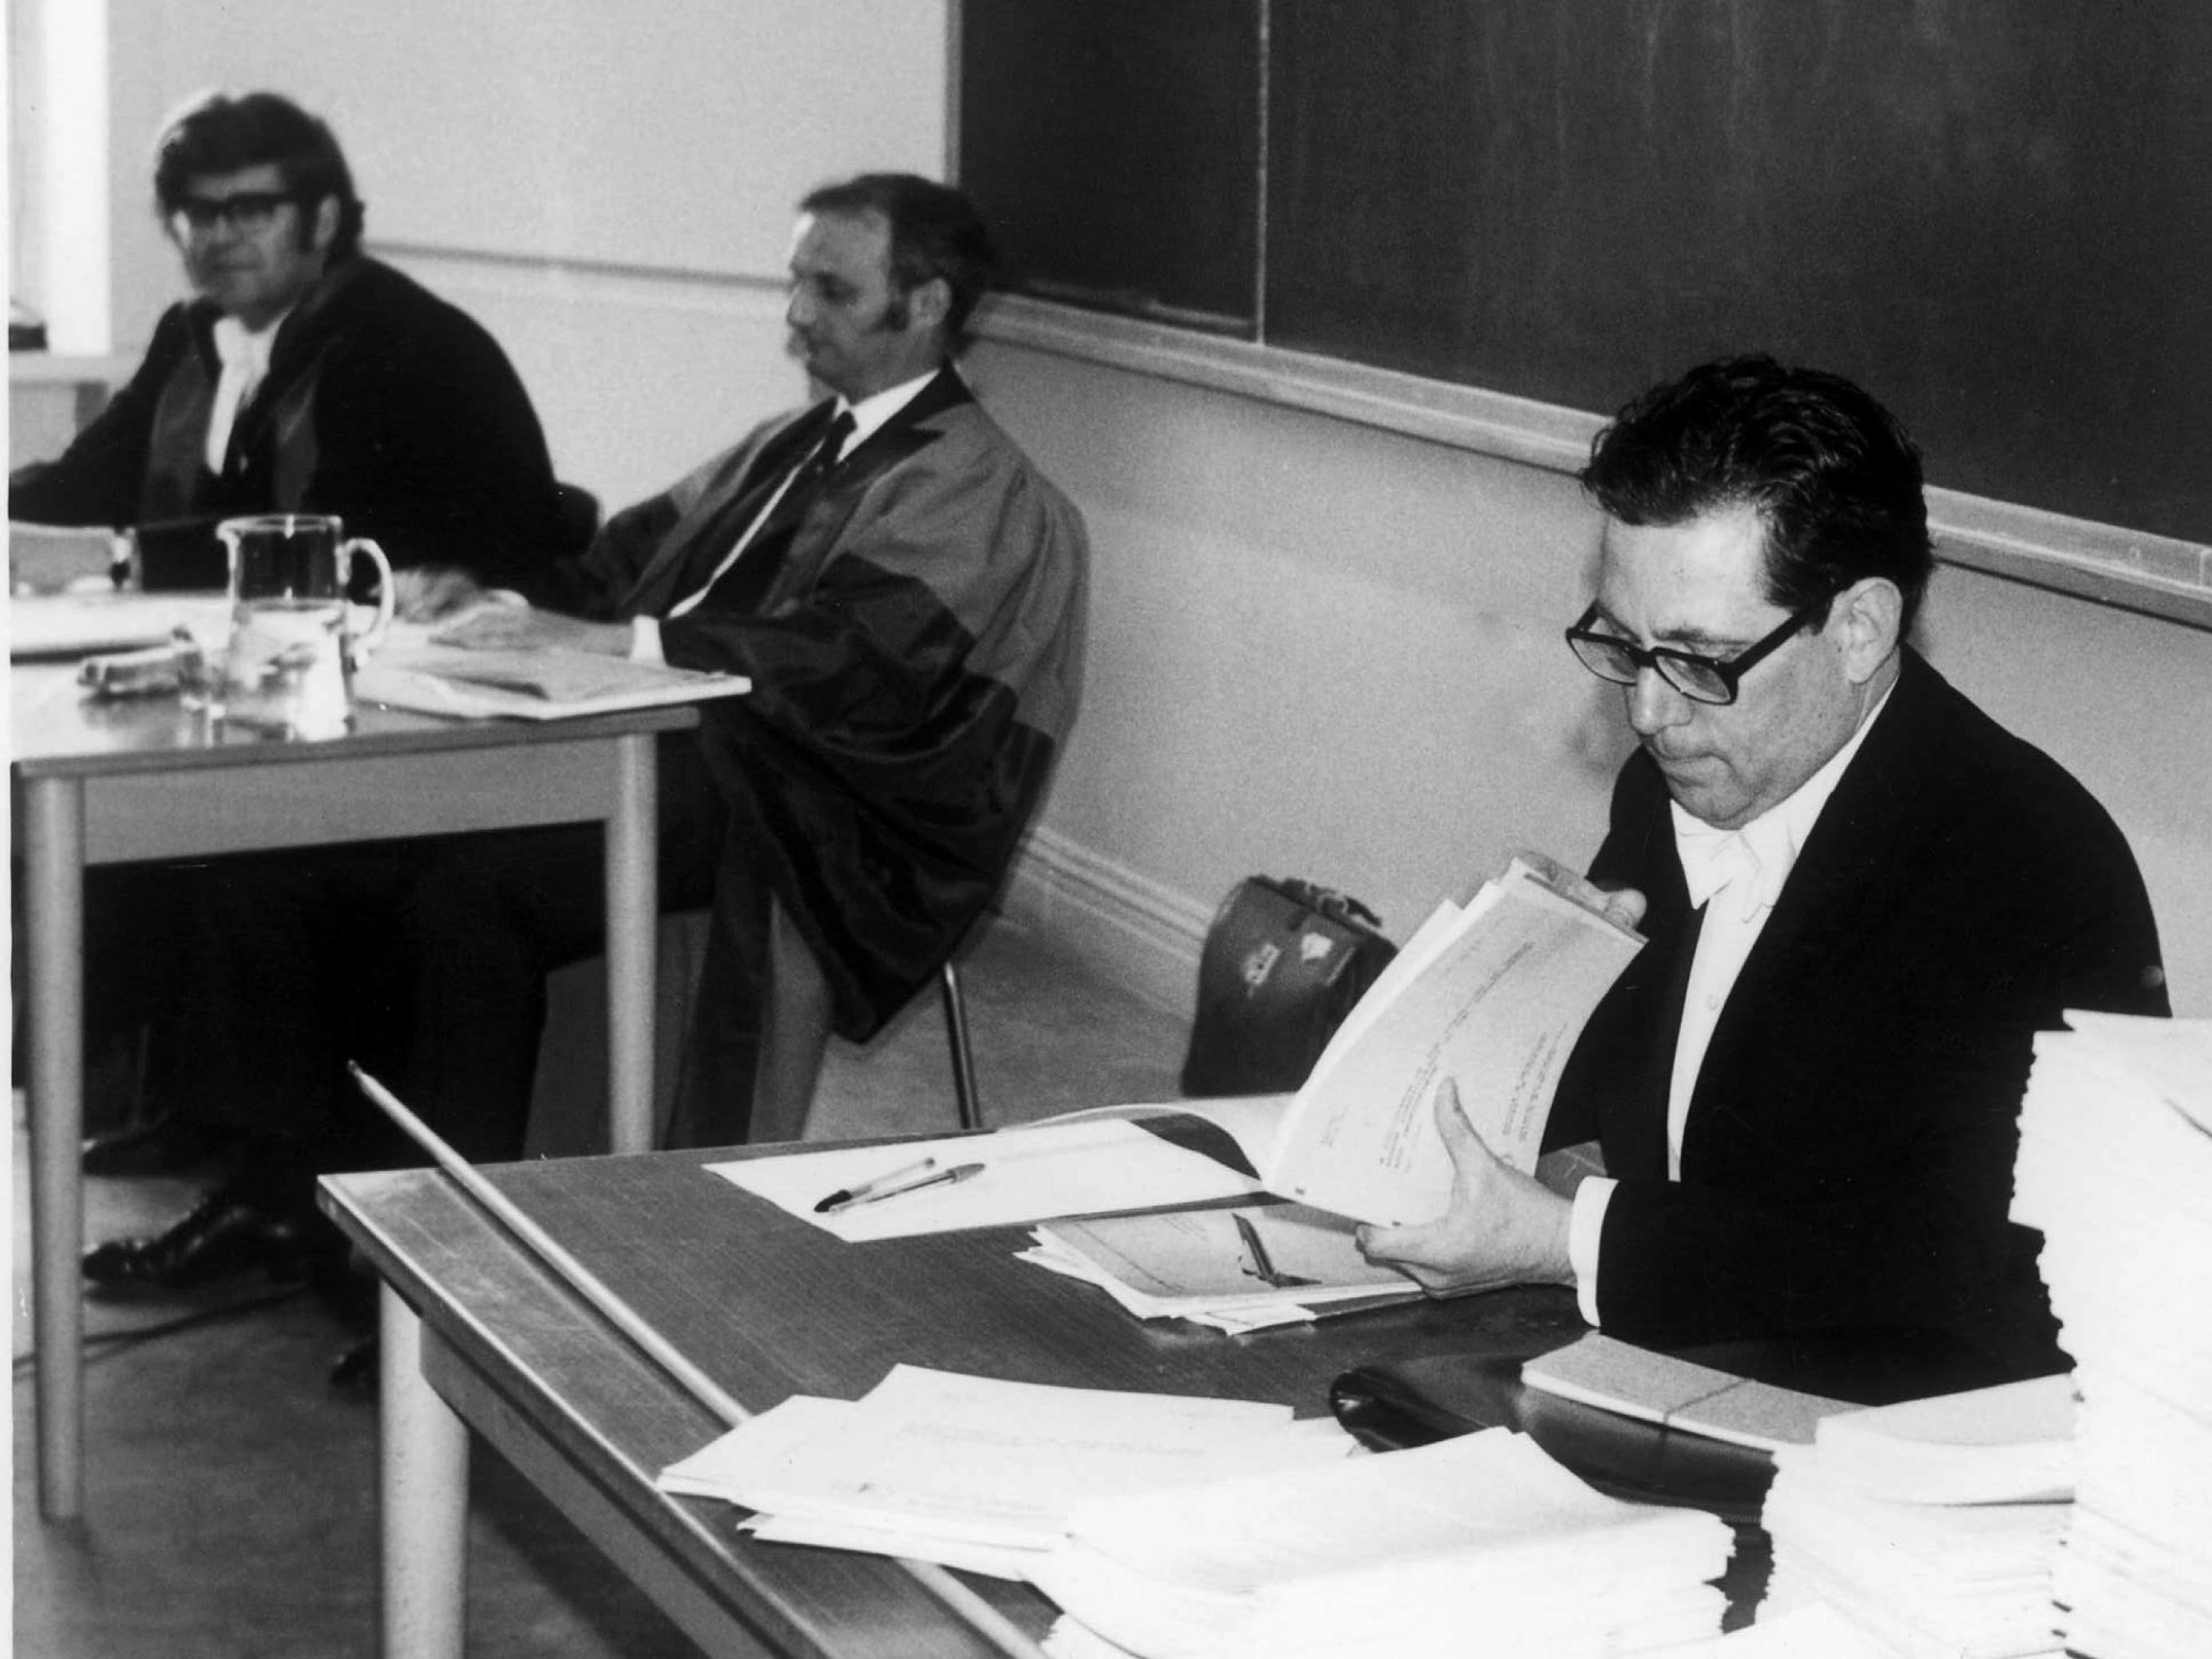 Aufnahme von Paul Crutzen (rechts) bei seiner Dissertationsprüfung. Einen Tisch weiter sitzen zwei weitere Männer.